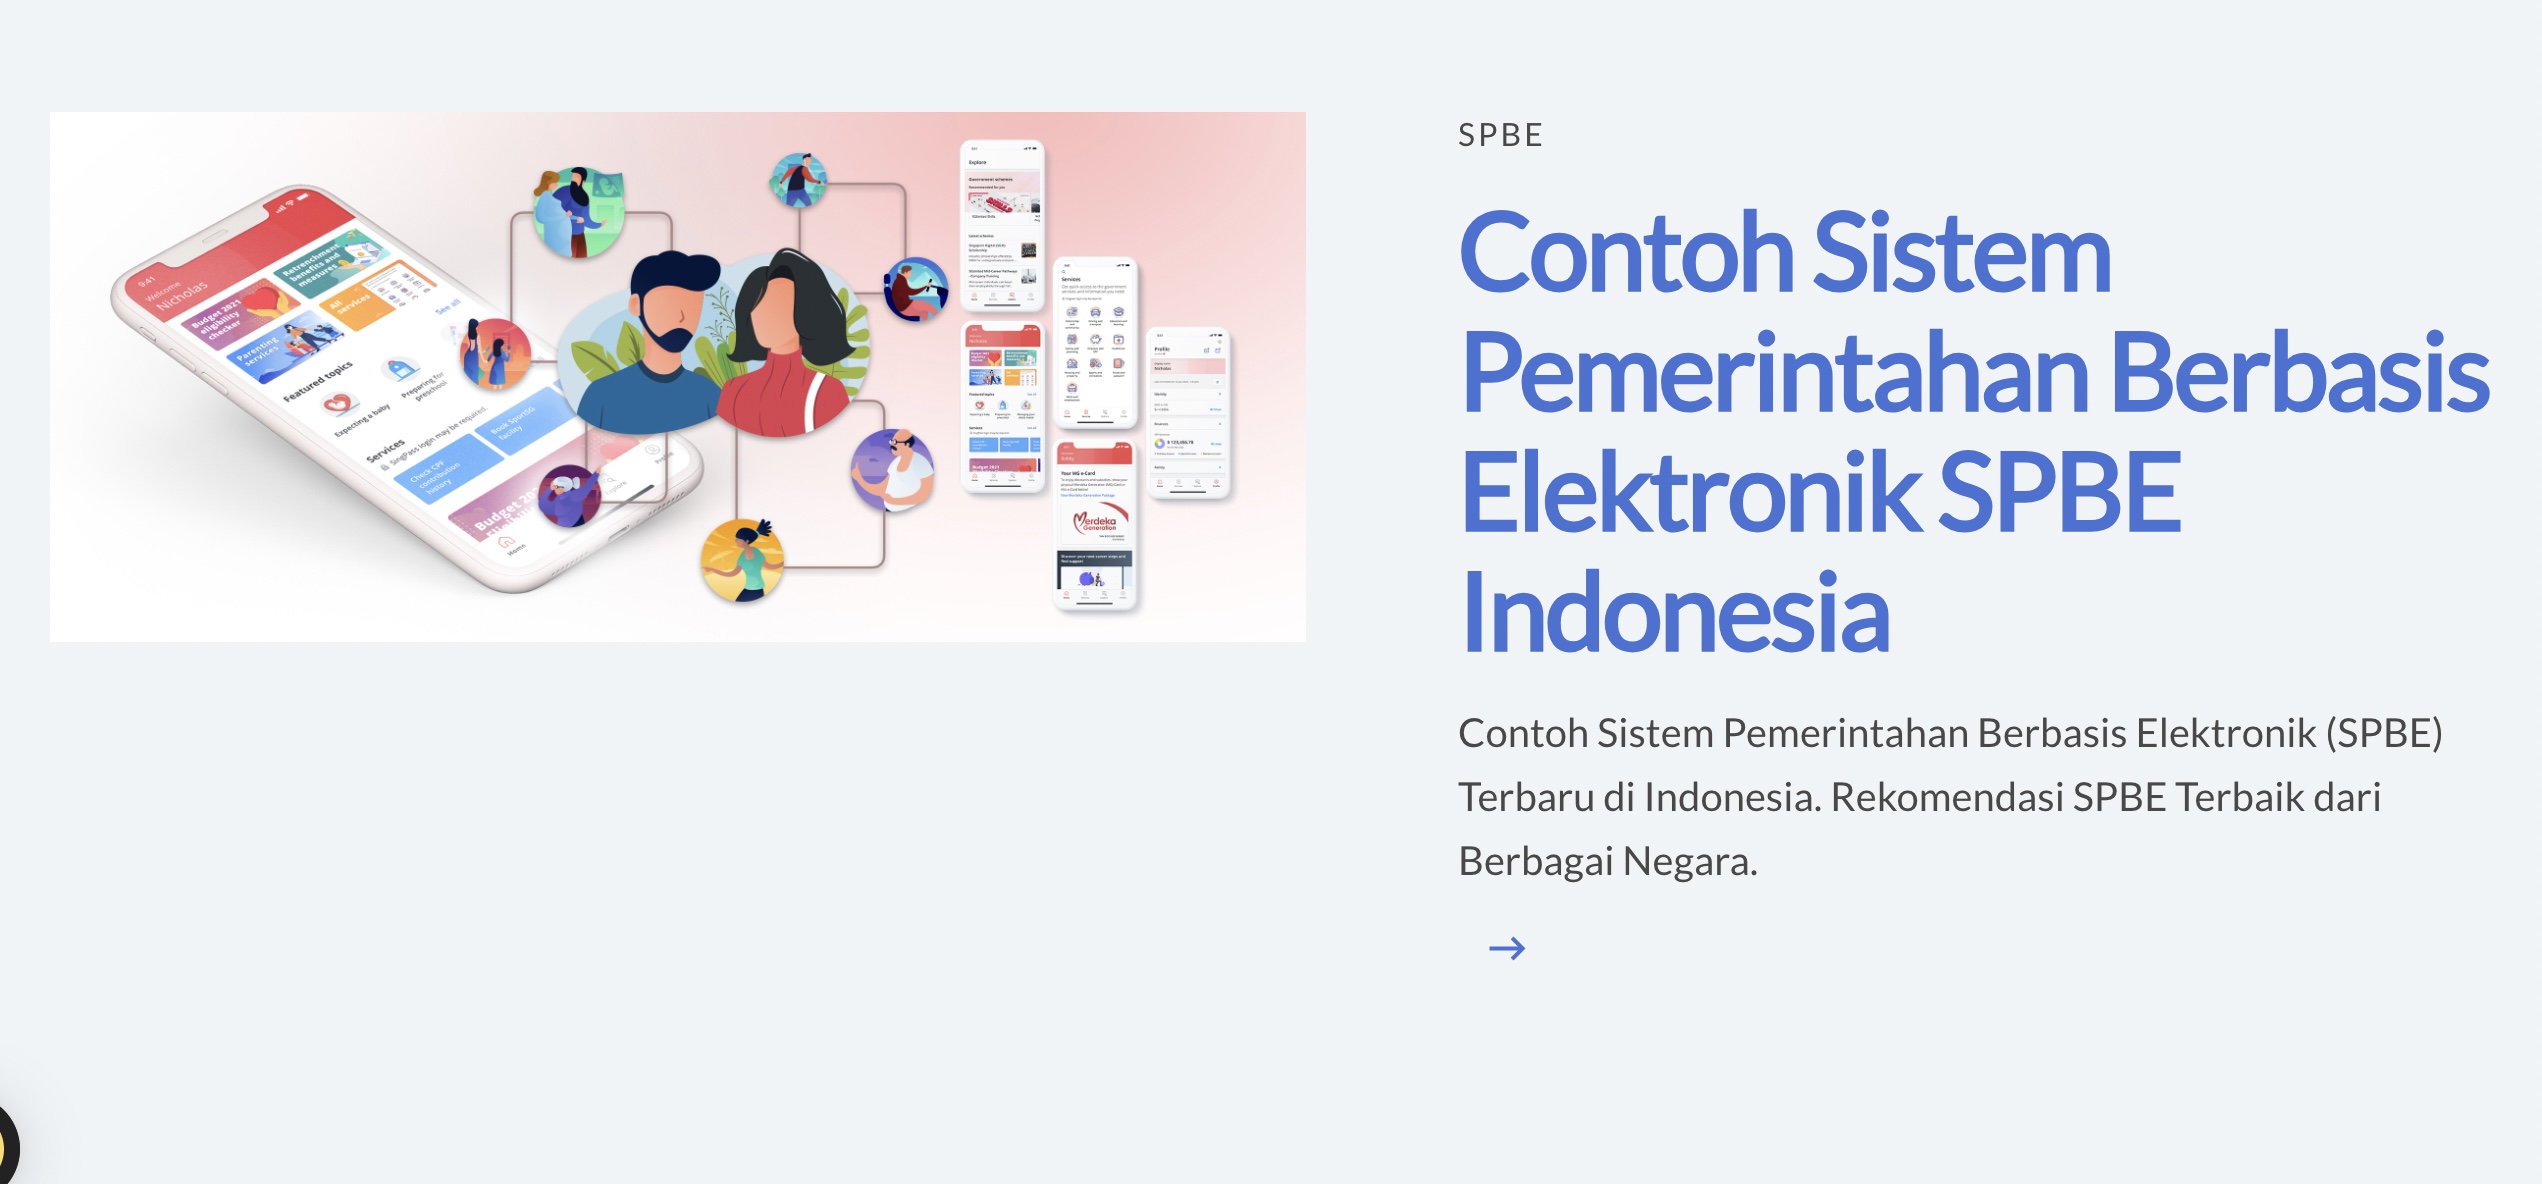 Contoh Sistem Pemerintahan Berbasis Elektronik SPBE Indonesia